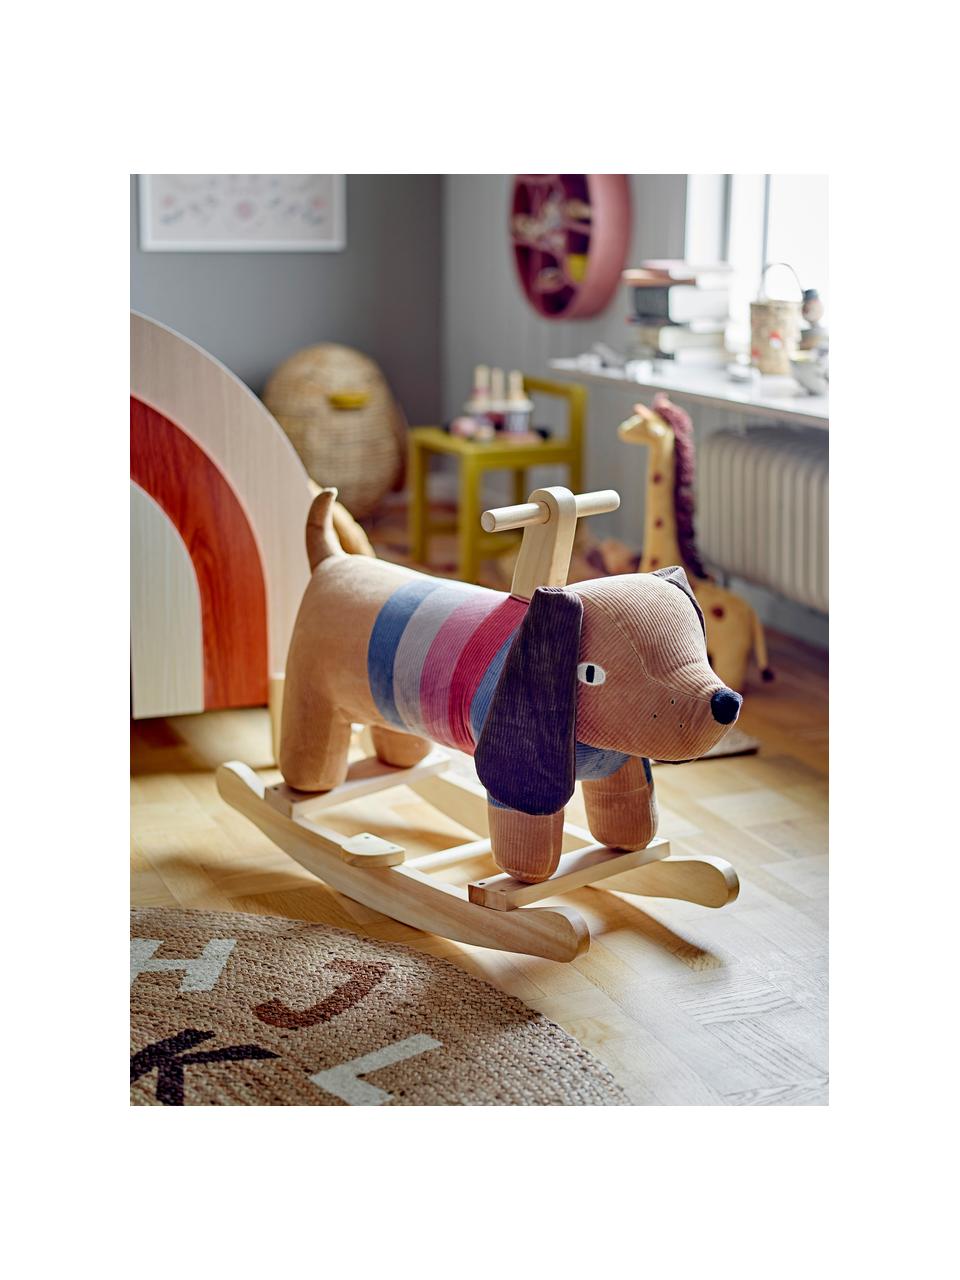 Zabawka na biegunach Charlie, Poliester, metal, drewno topoli, Beżowy, wielobarwny, S 66 x W 51 cm